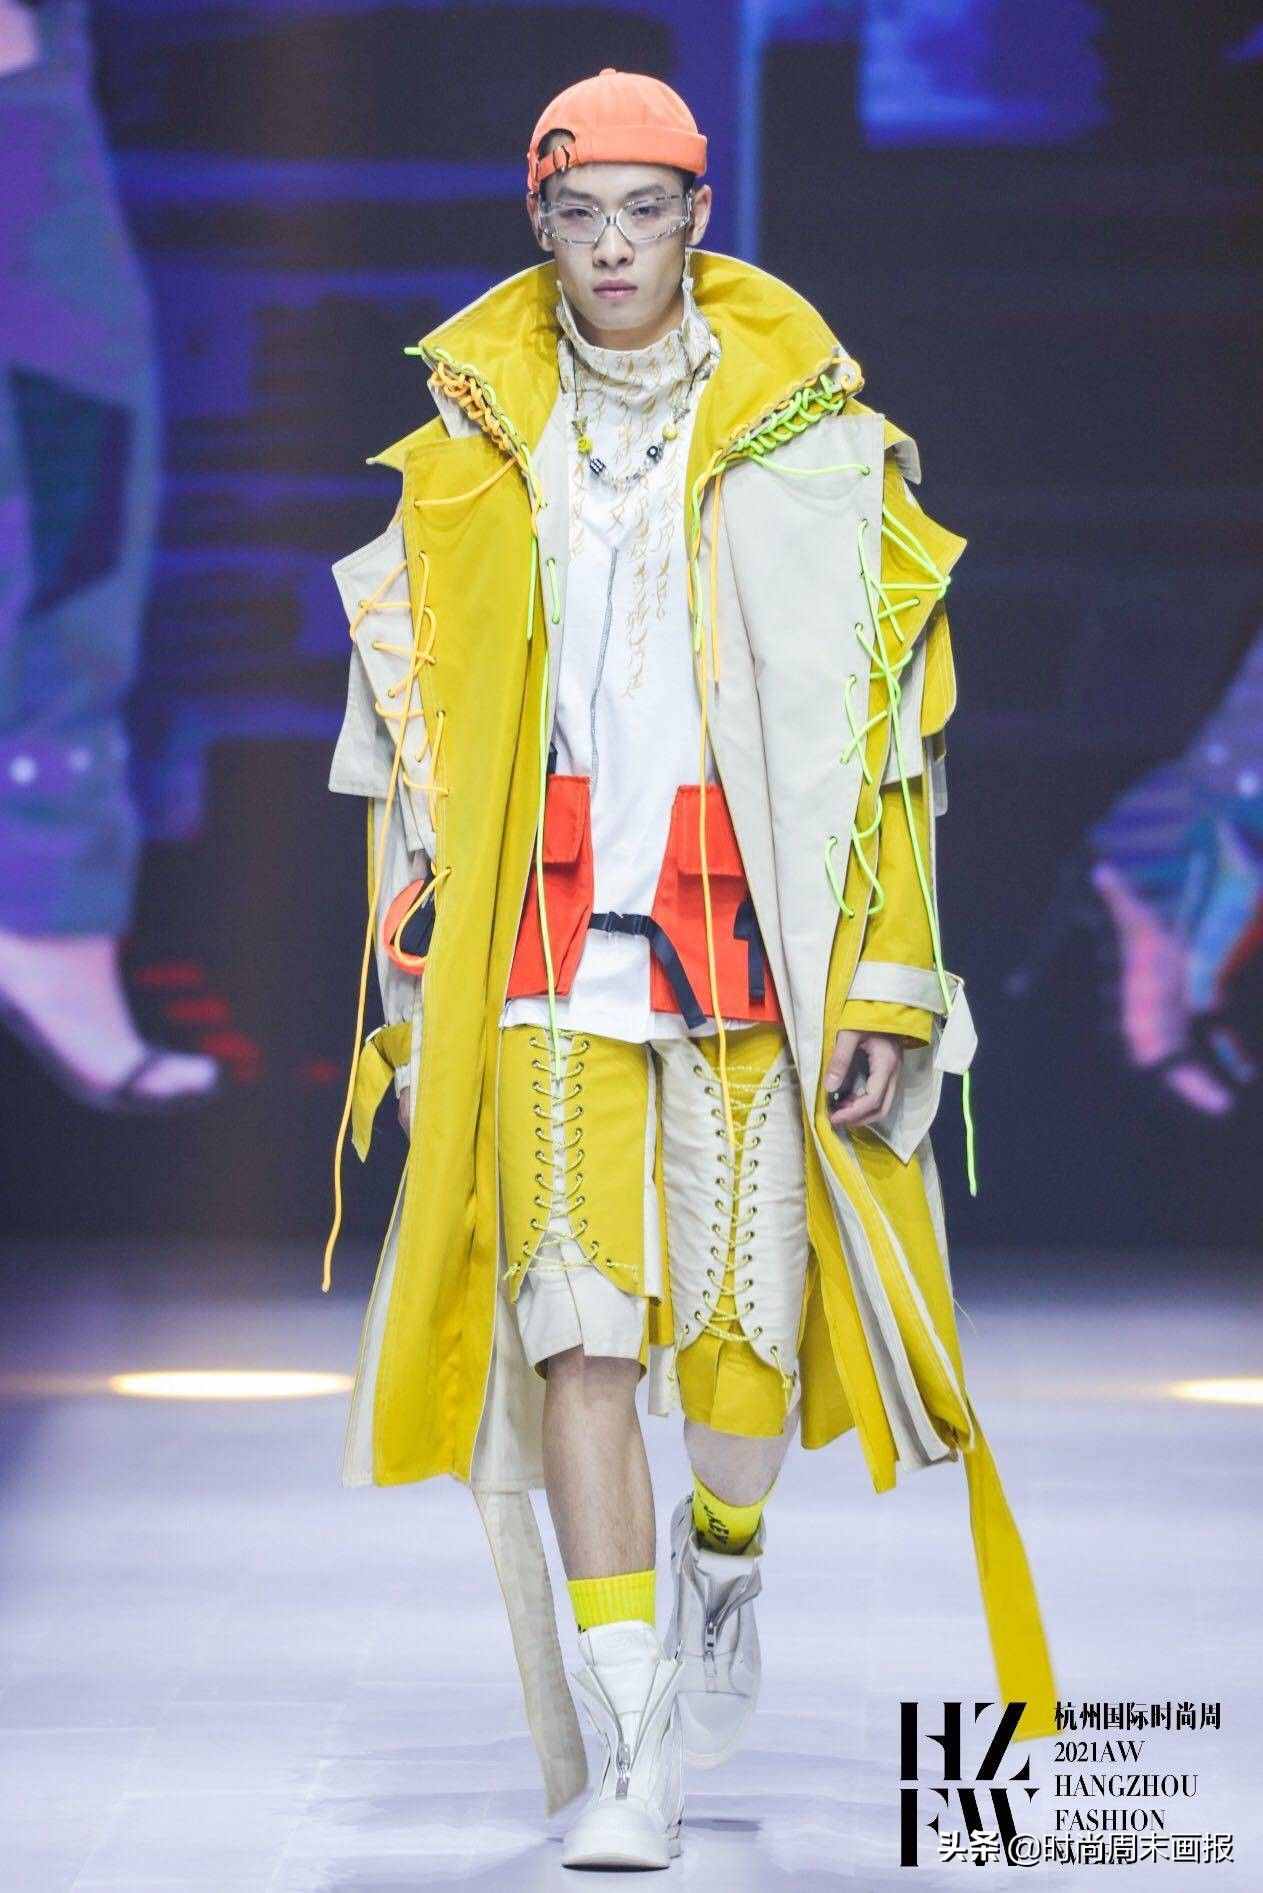 2021AW杭州国际时尚周正式启幕 学院派设计作品大秀成T台主流